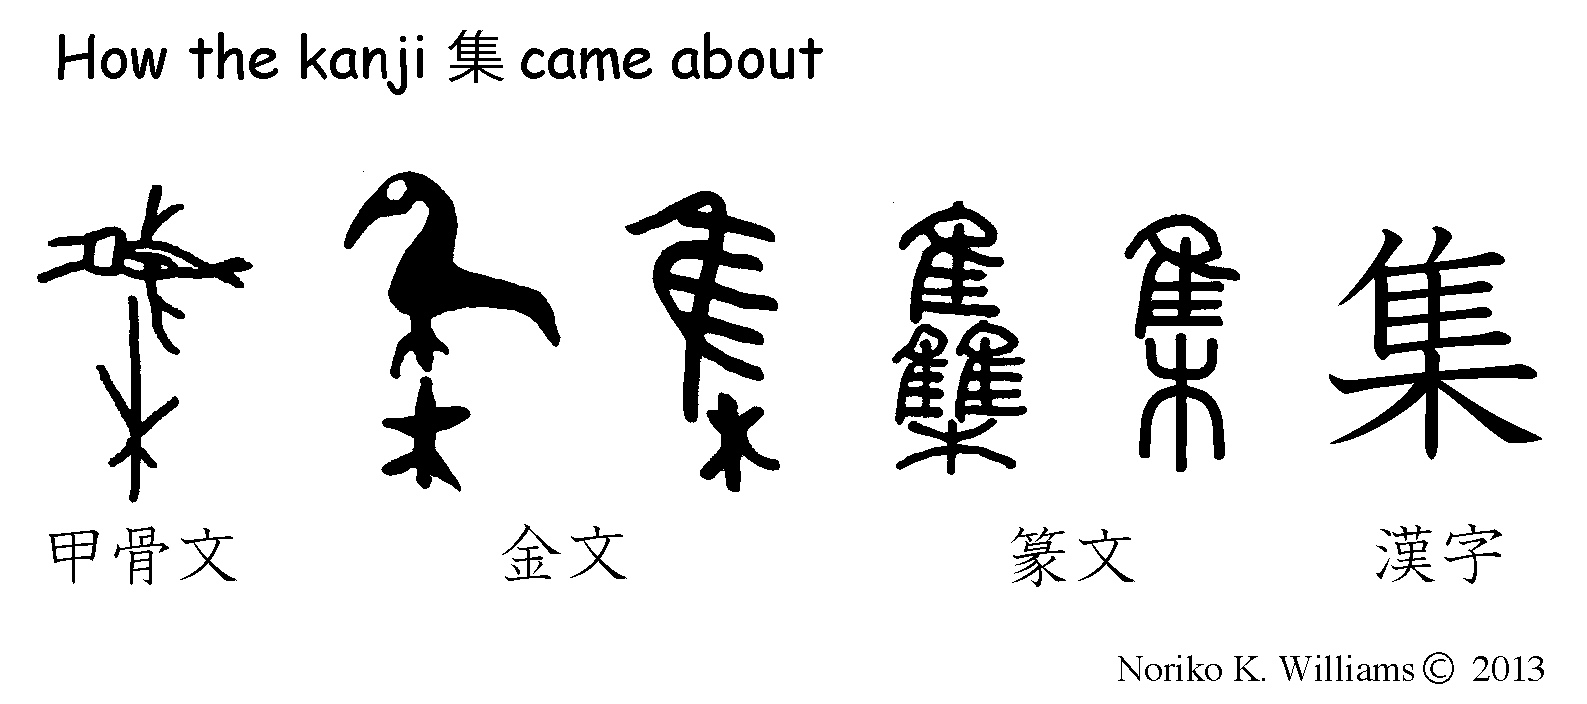 History of the kanji集